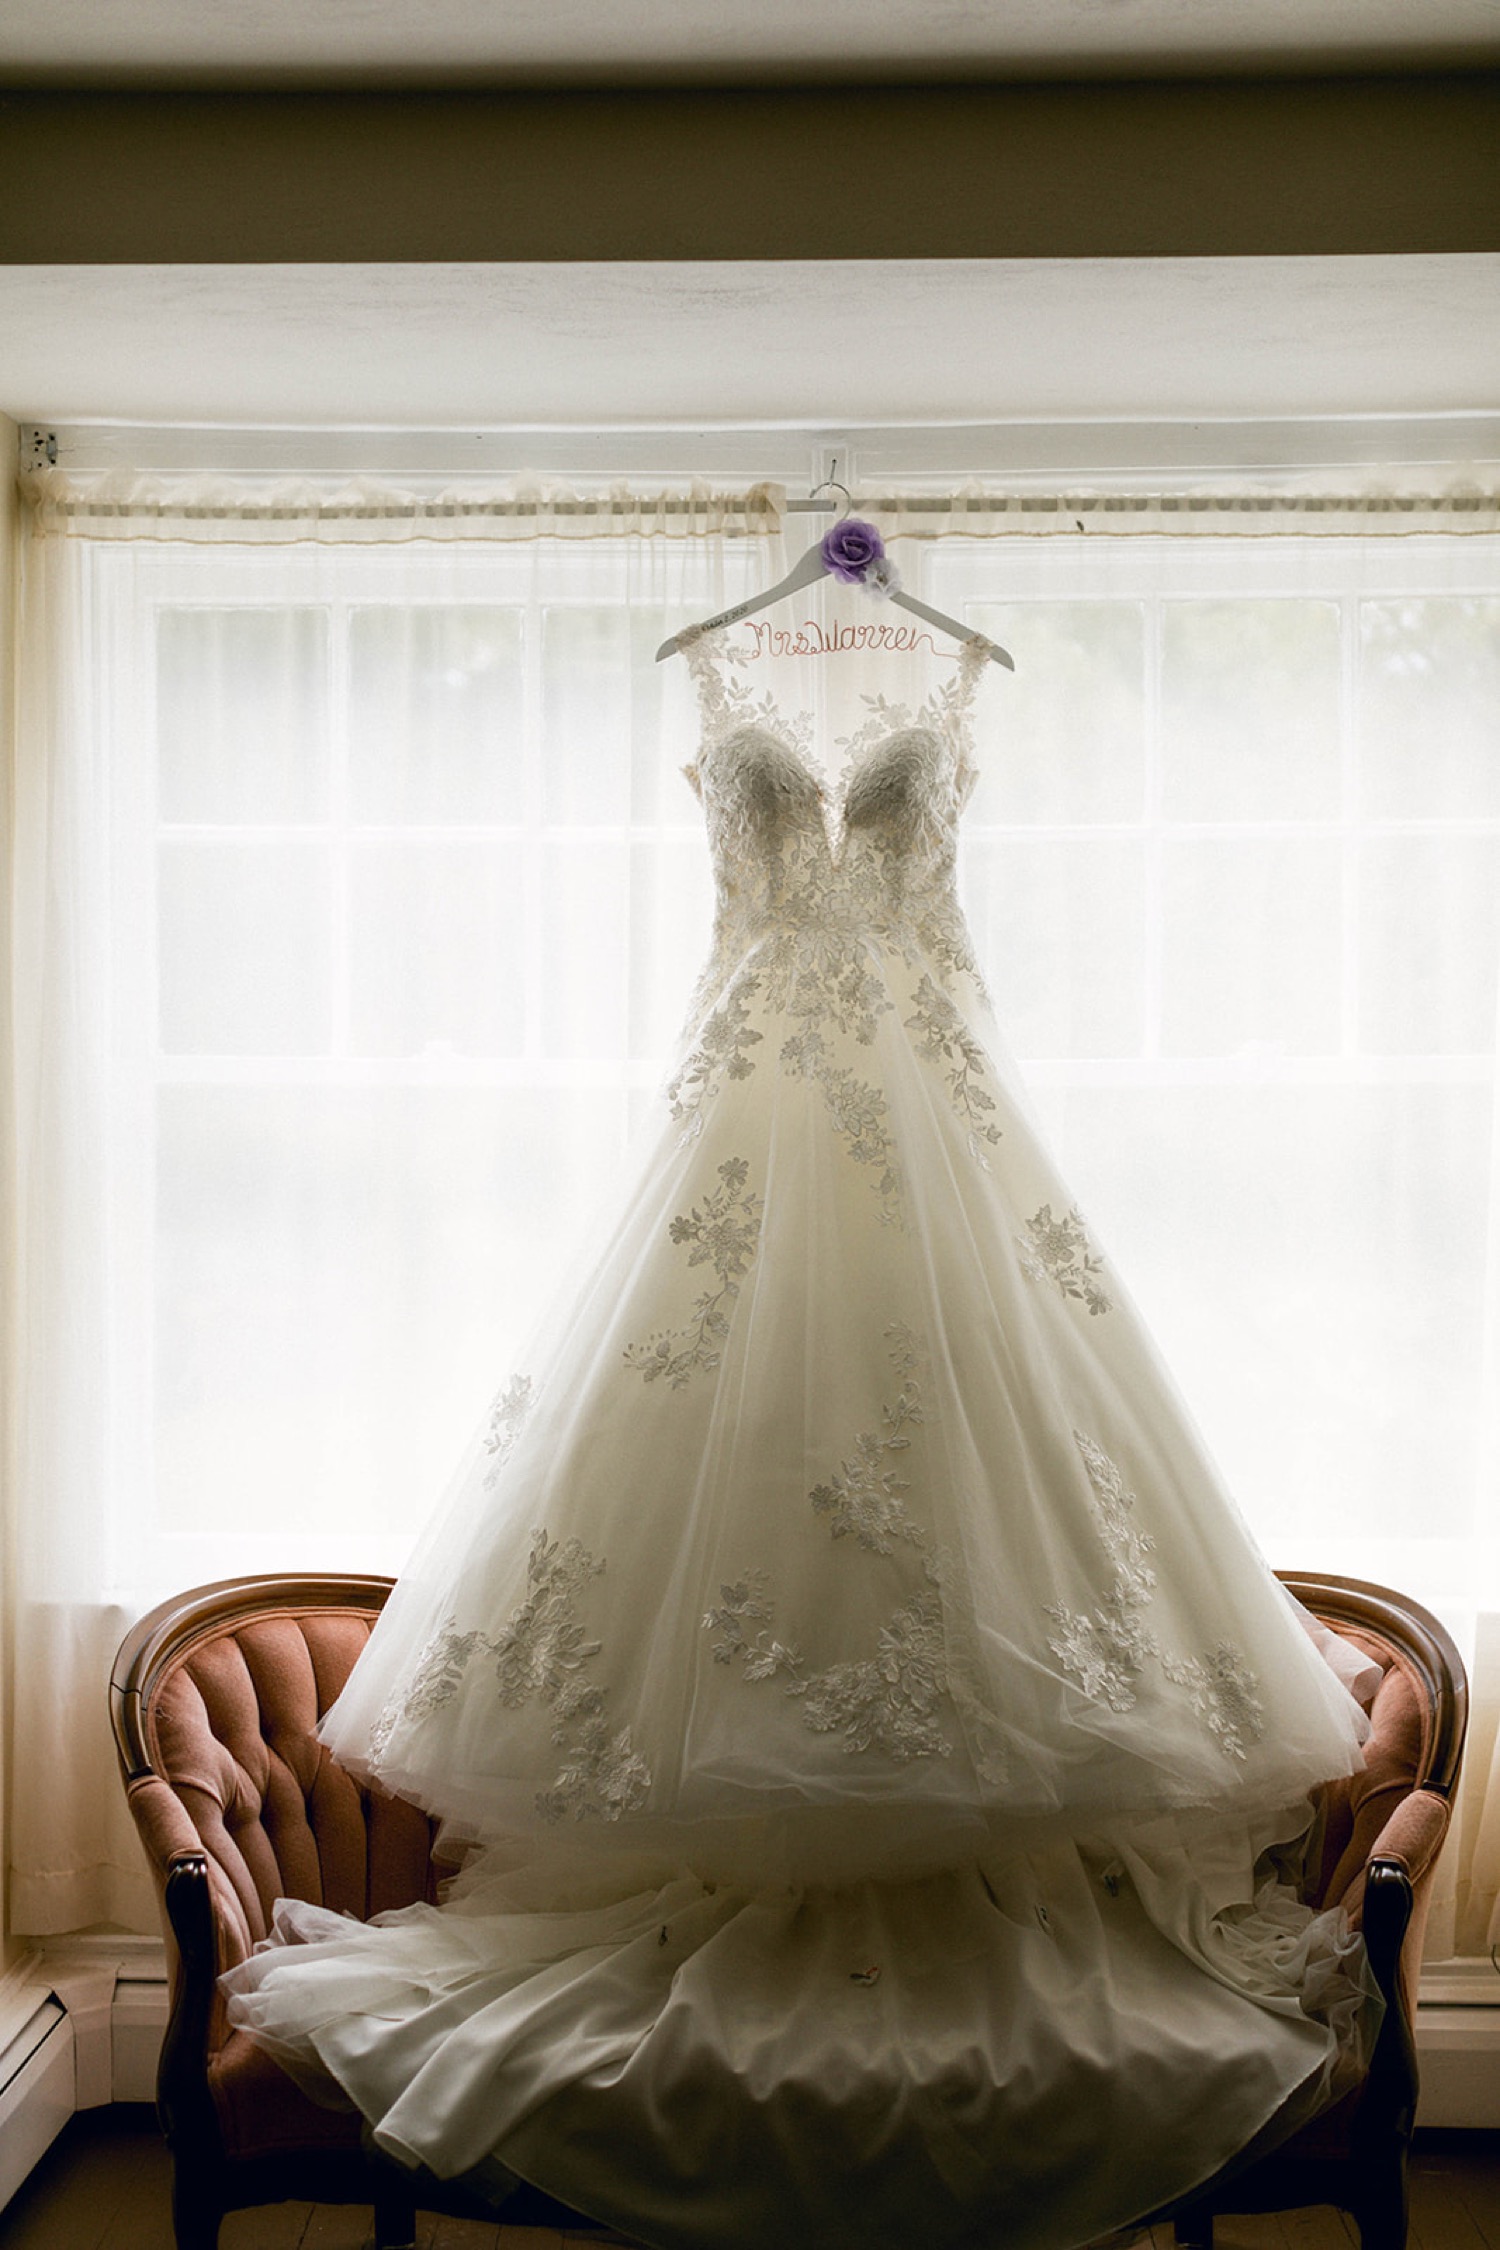 bride wedding dress hanging in window